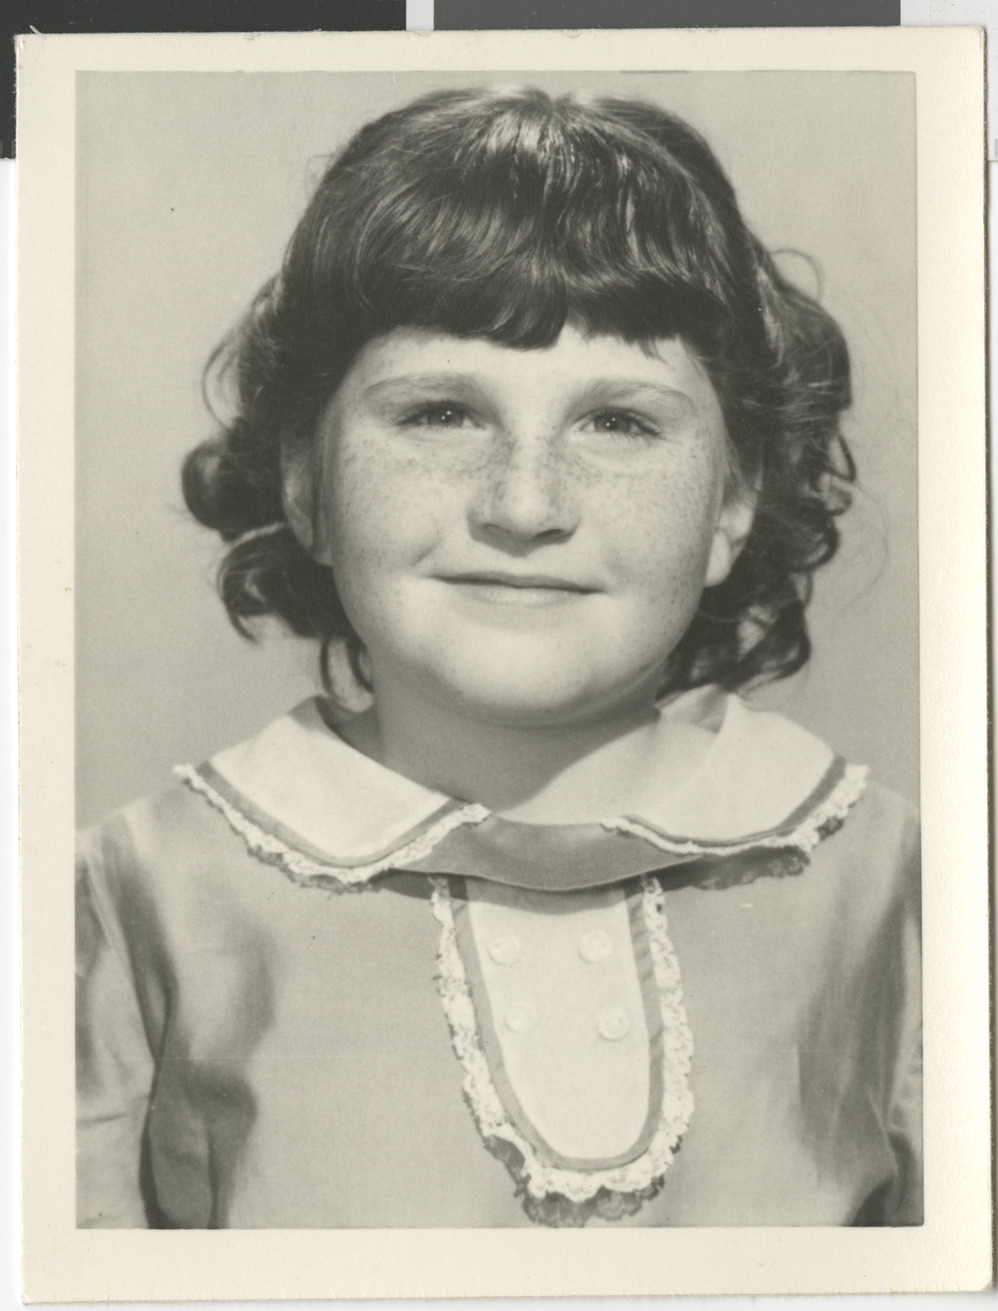 Photograph of Ruth Pearson Urban as a child, circa 1960